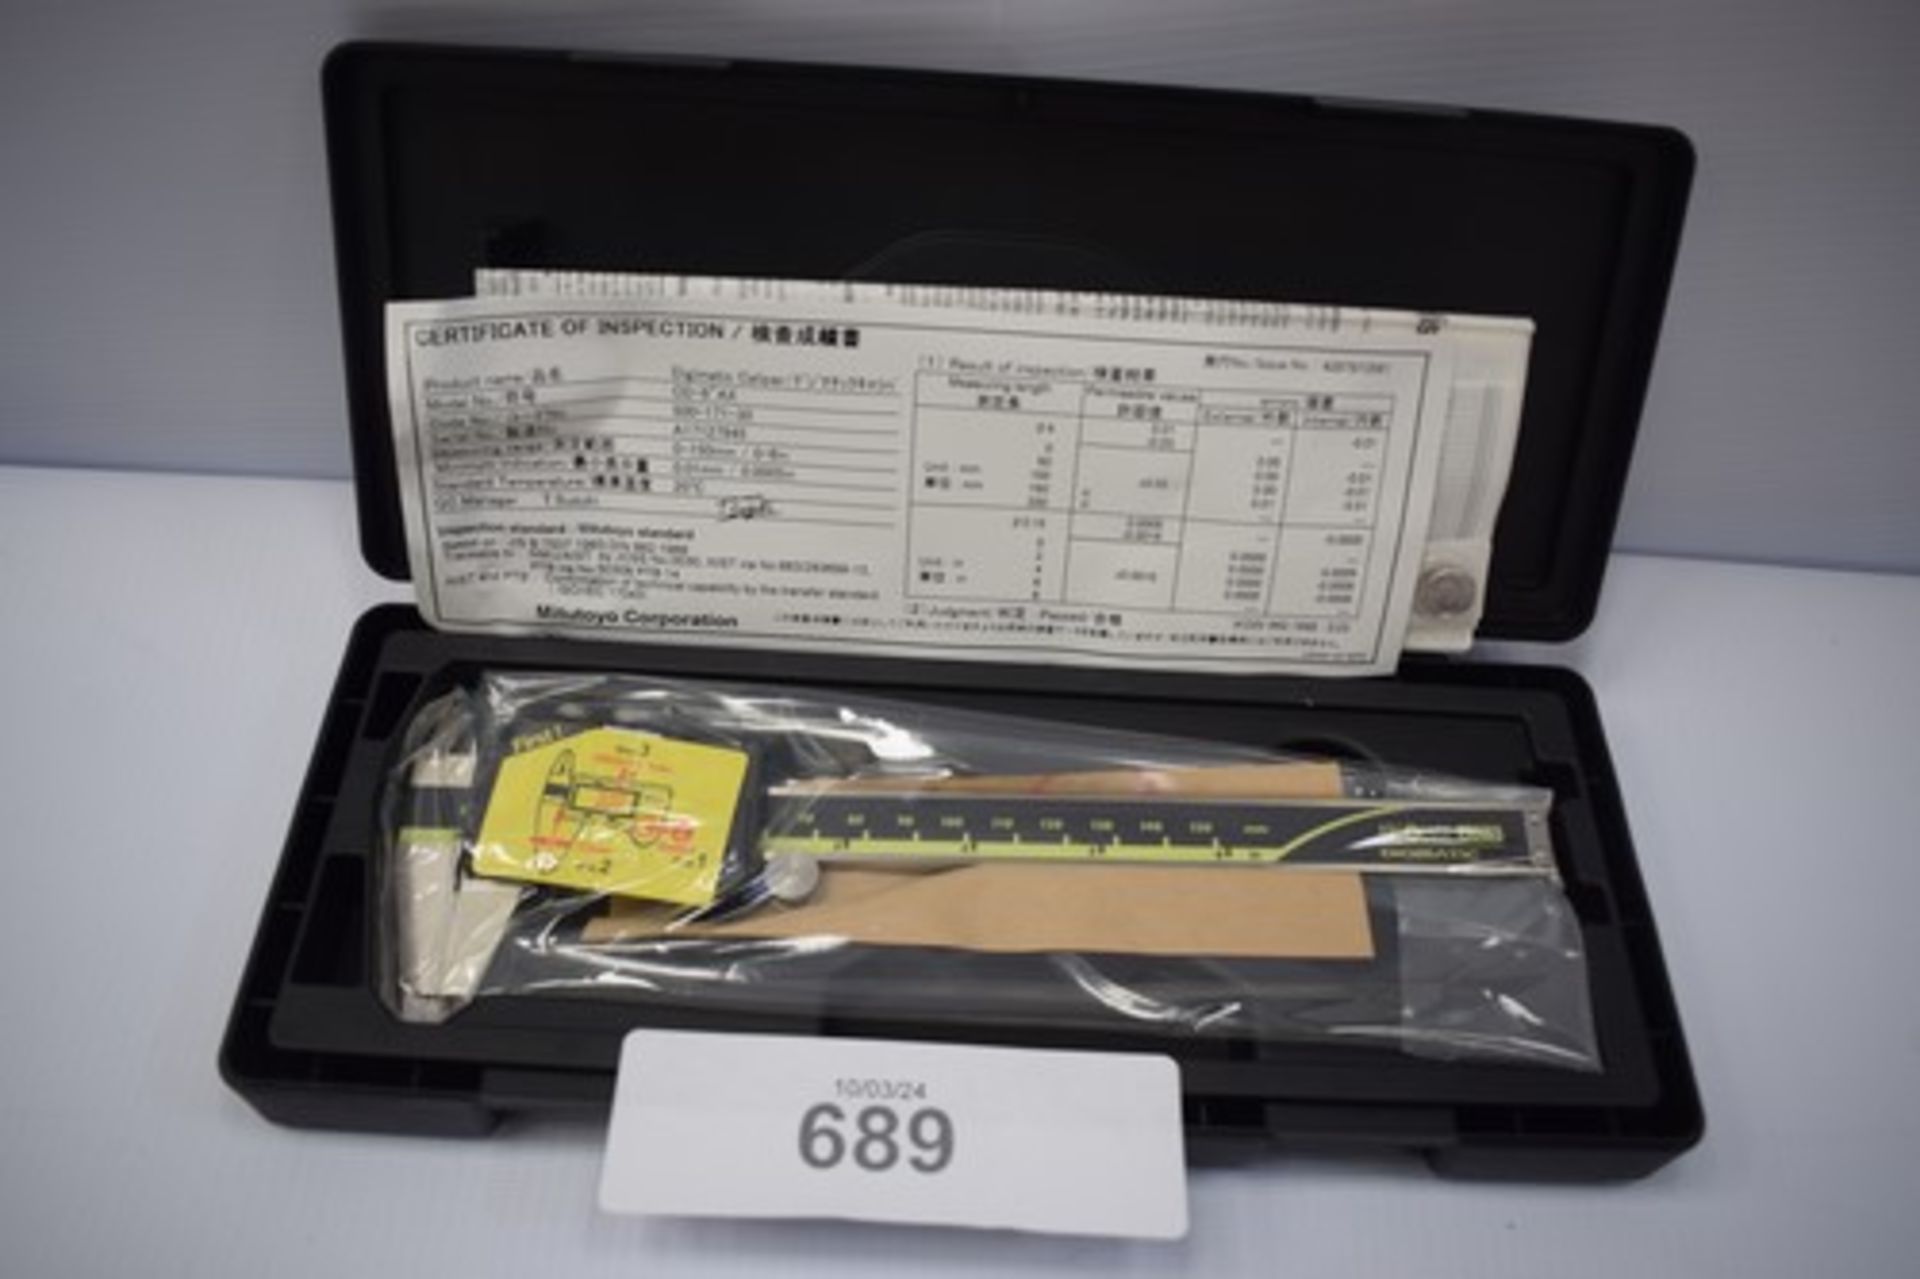 1 x Mitutoyo digimatic caliper, model: 500-171-30 CD-6" AX - new in case (GS0)